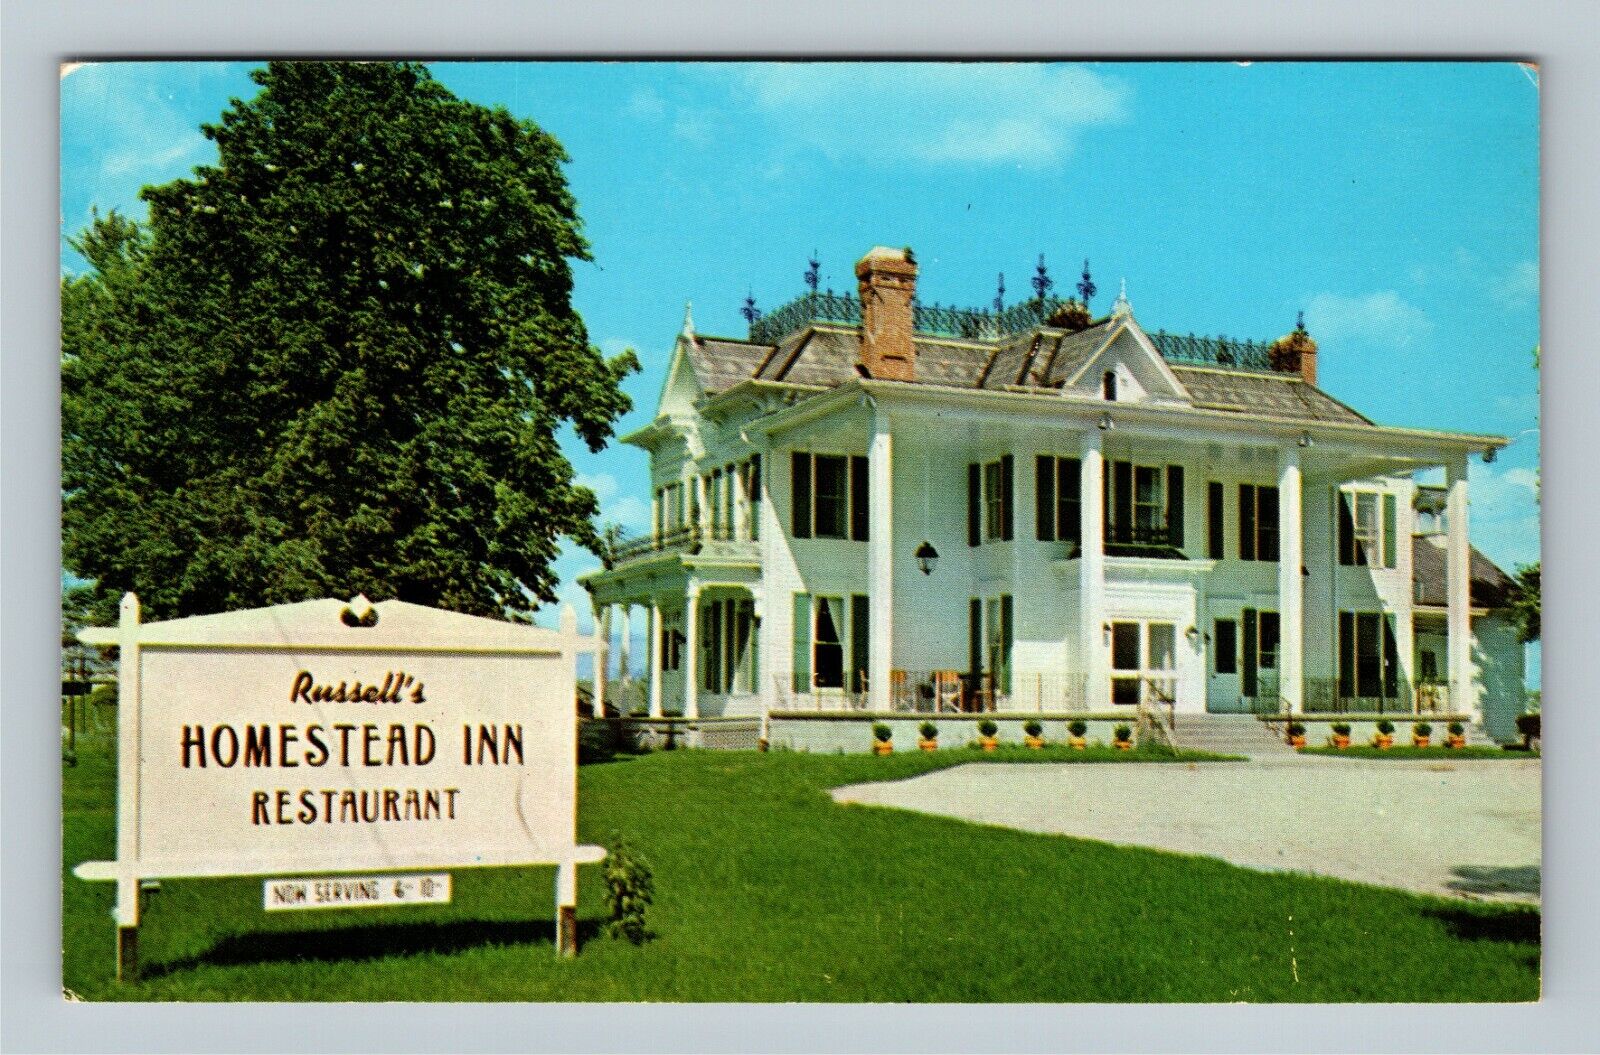 Milan OH, Russell's Homestead Inn, Ohio Vintage Postcard